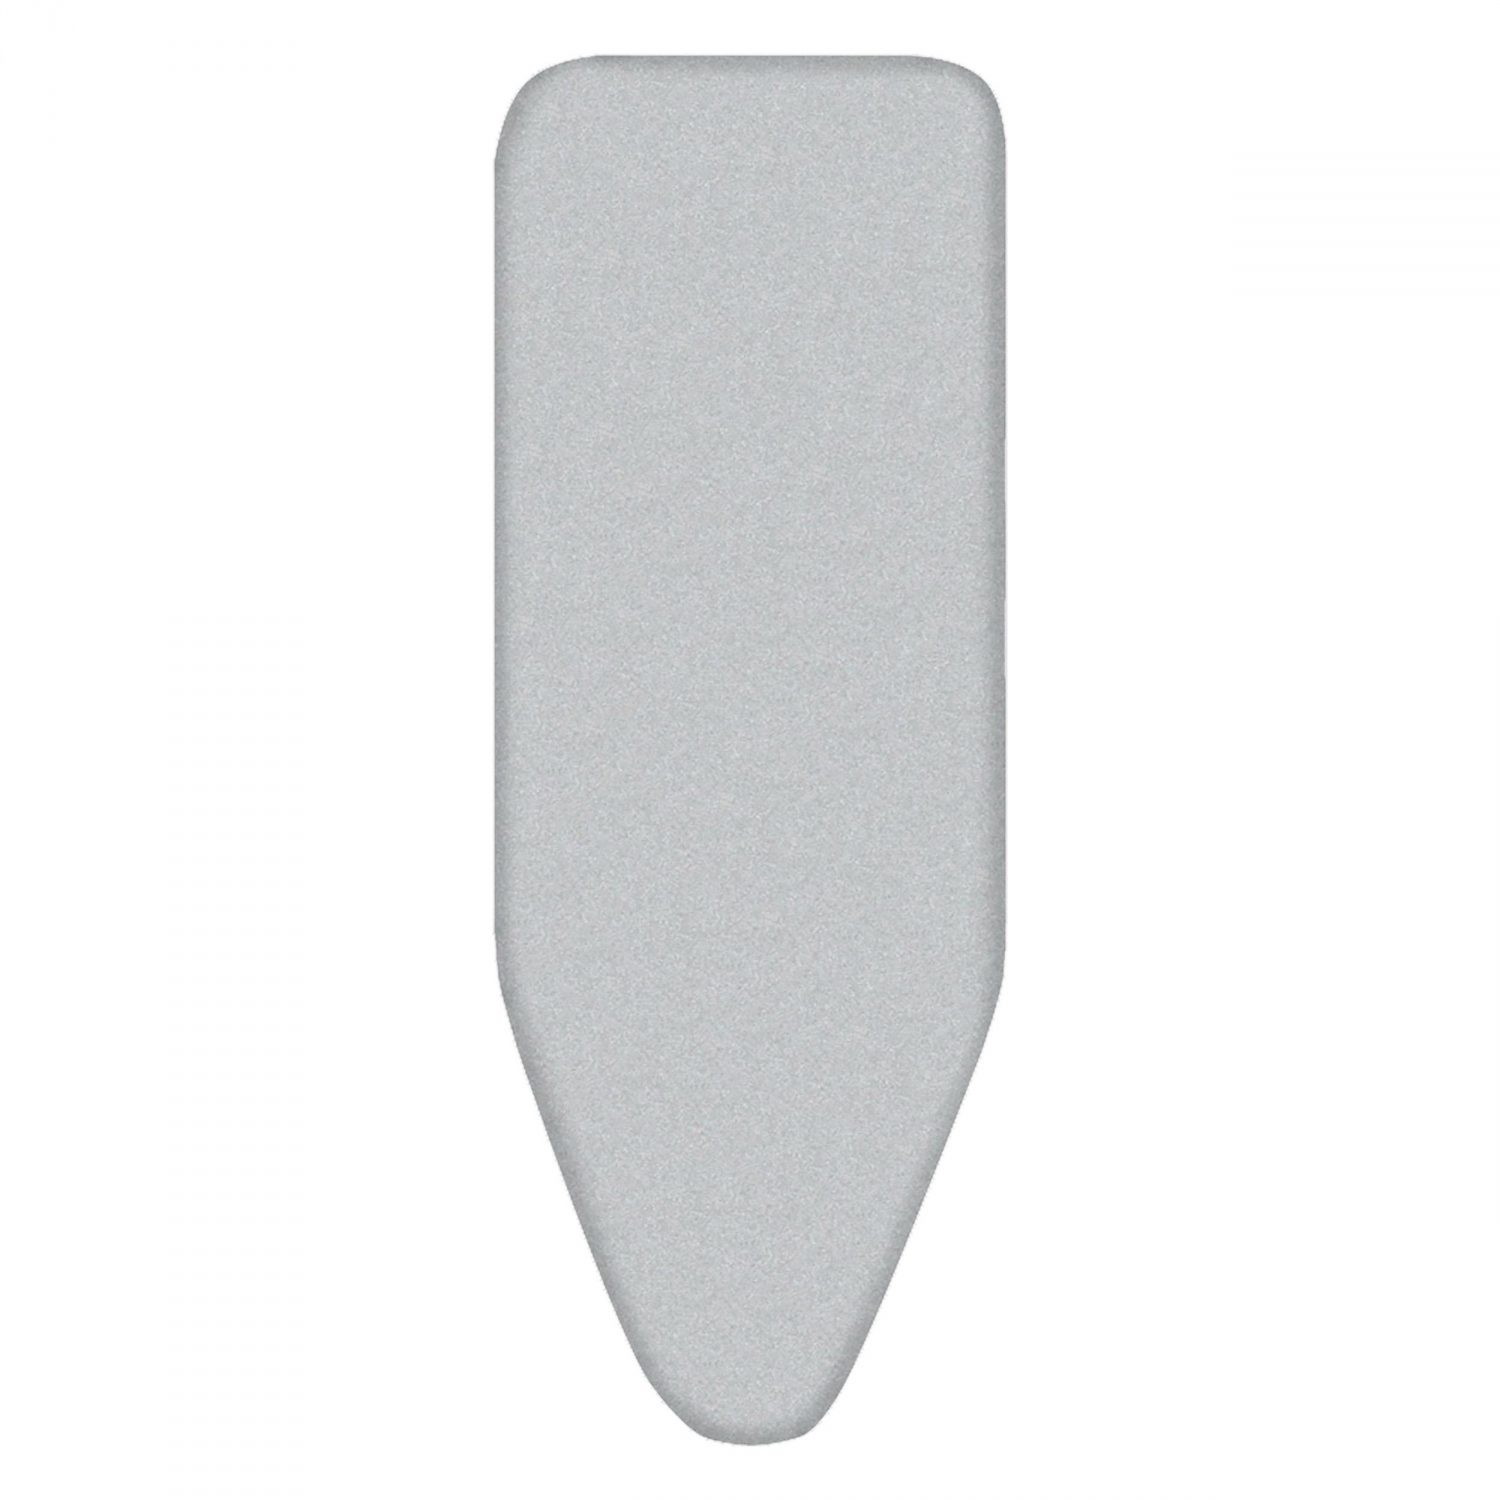 Funda para tabla de planchar ajustable universal - gris 0601200-8